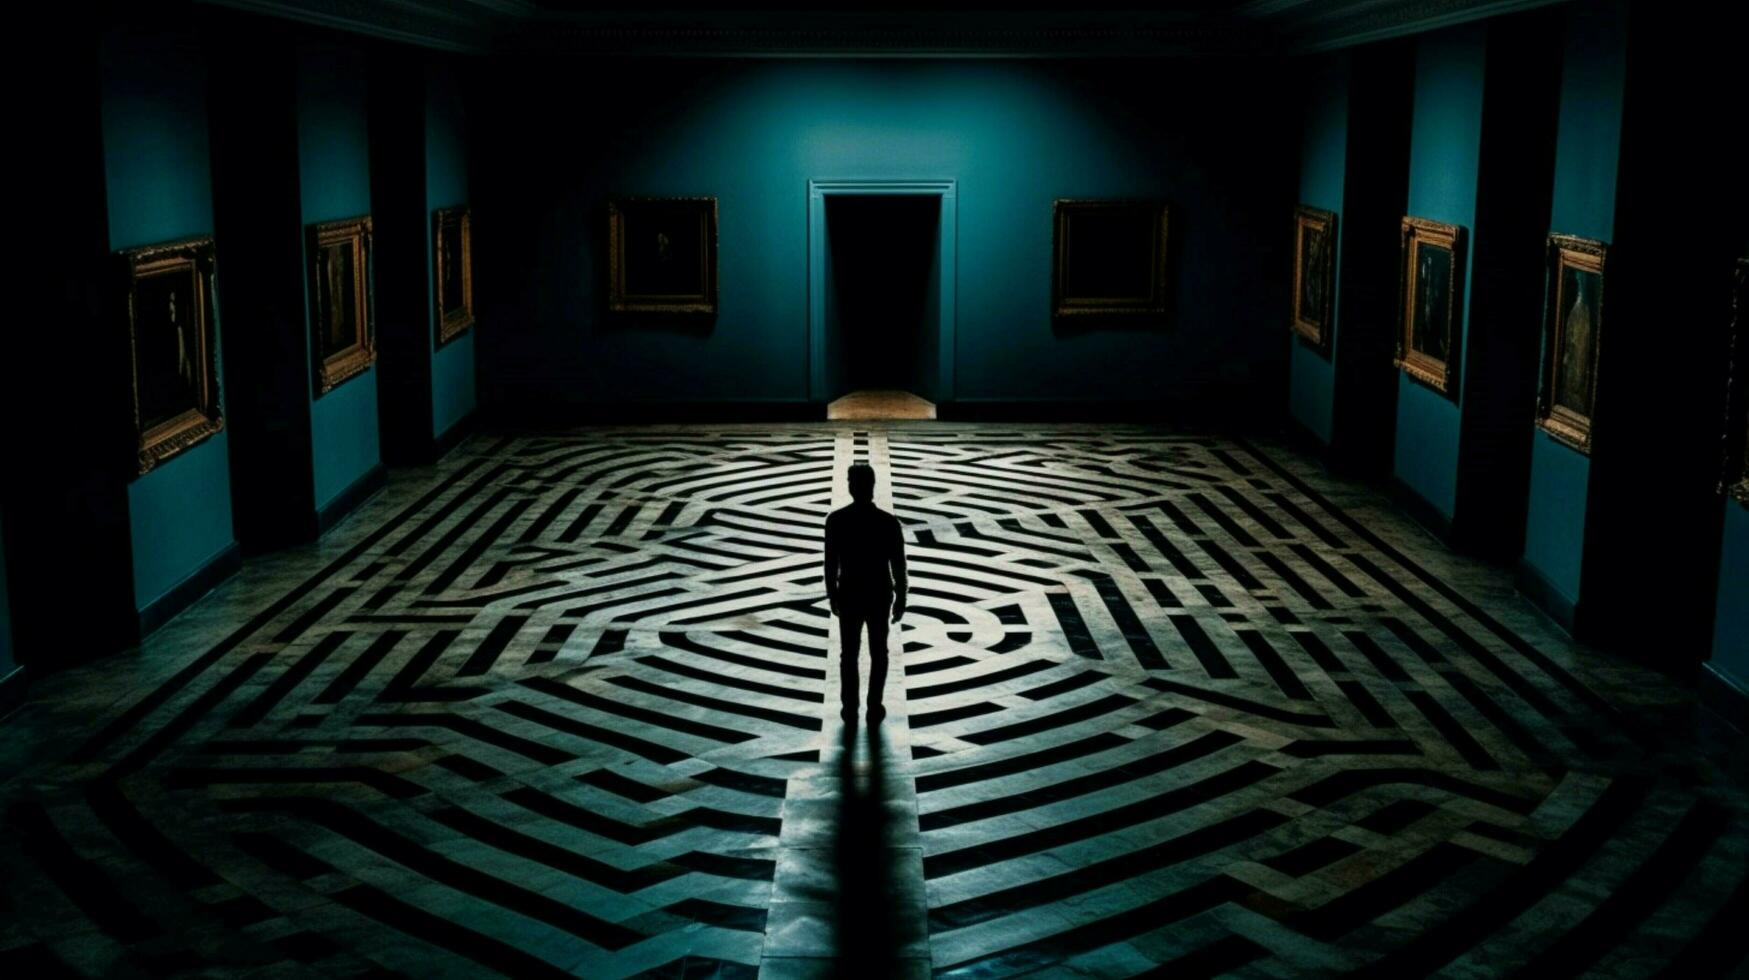 een Mens staat in een donker kamer met een doolhof Aan de fl foto